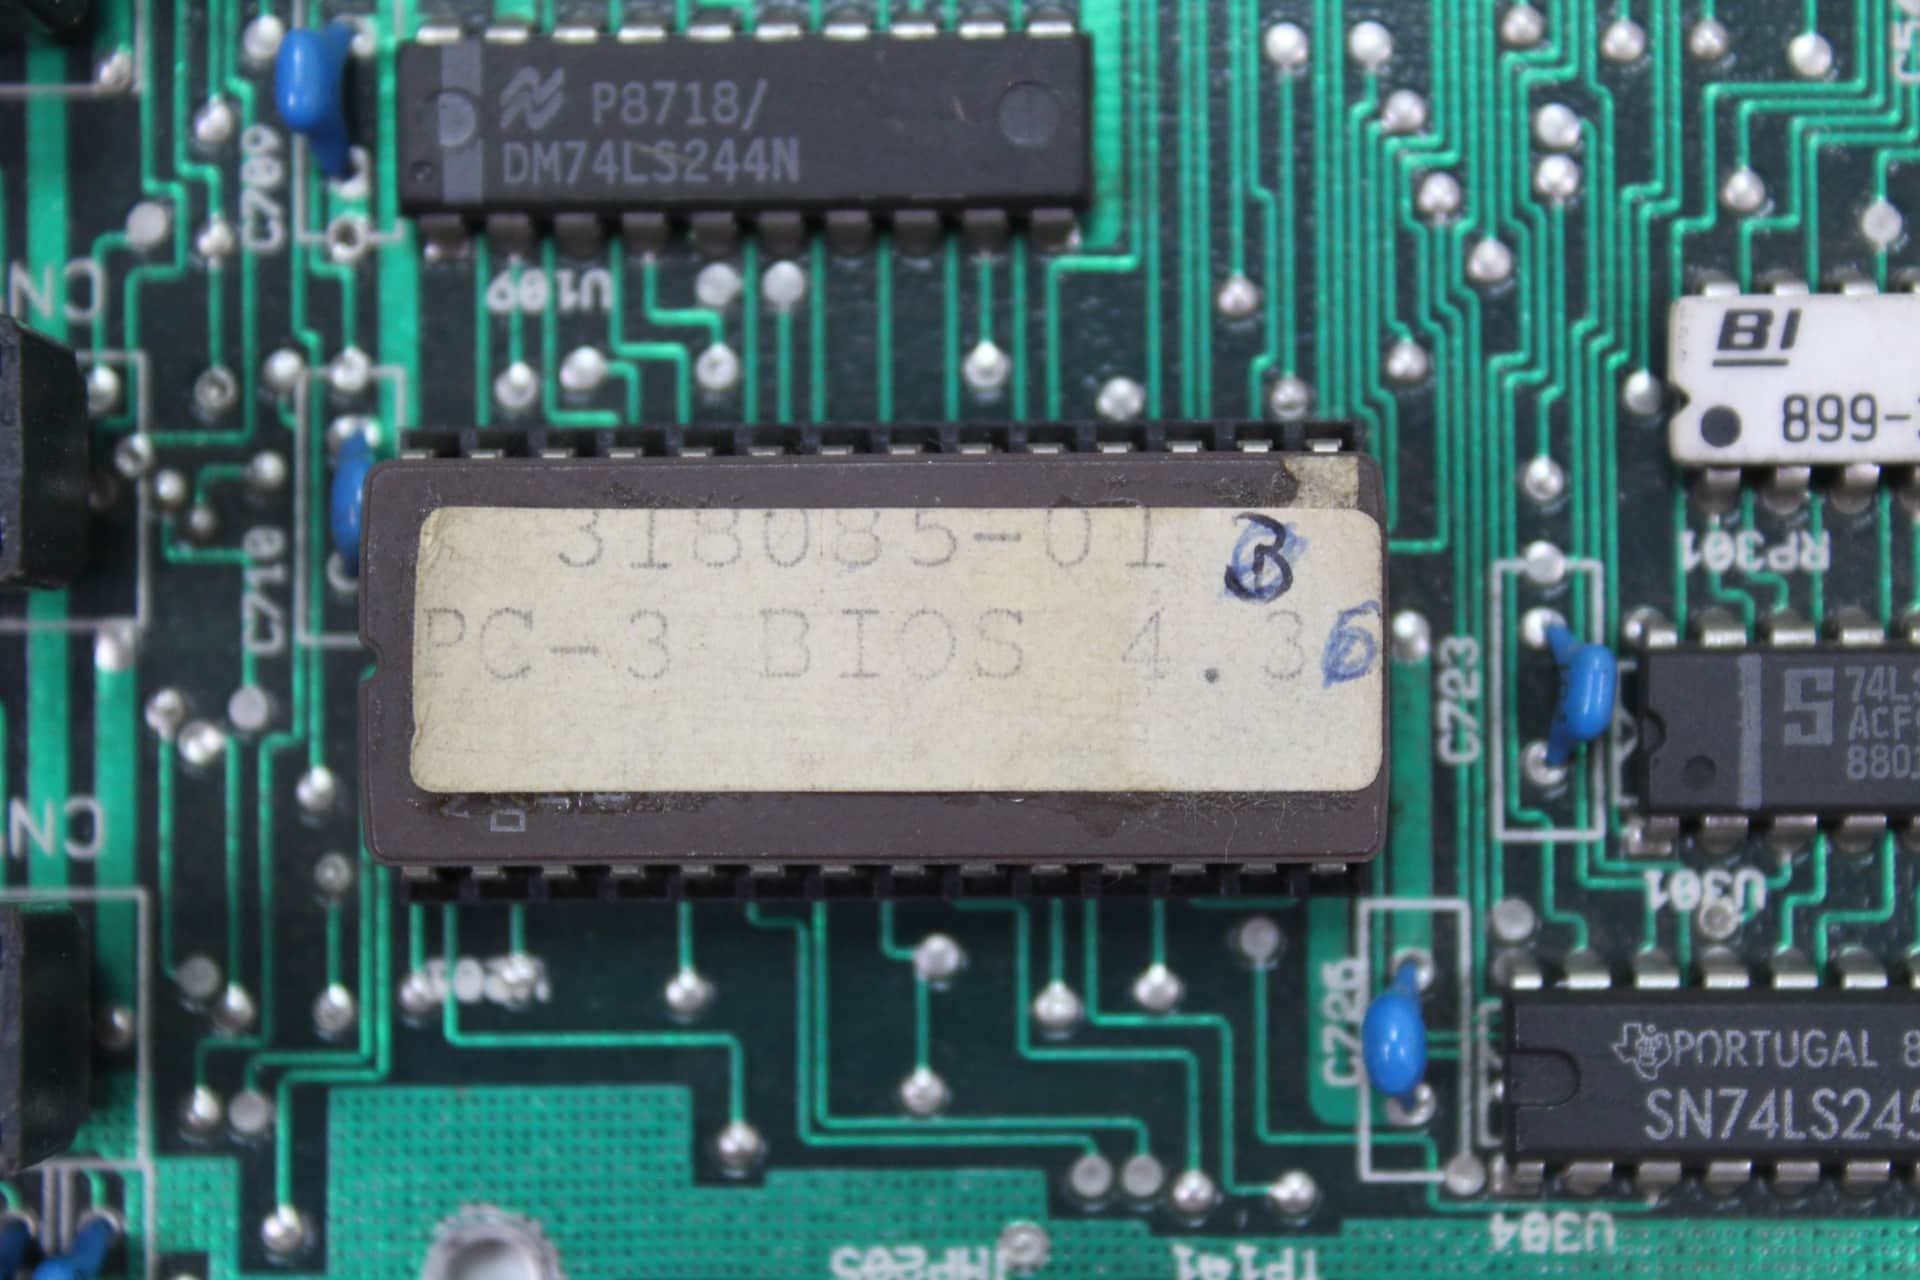 Commodore PC 20-III - BIOS